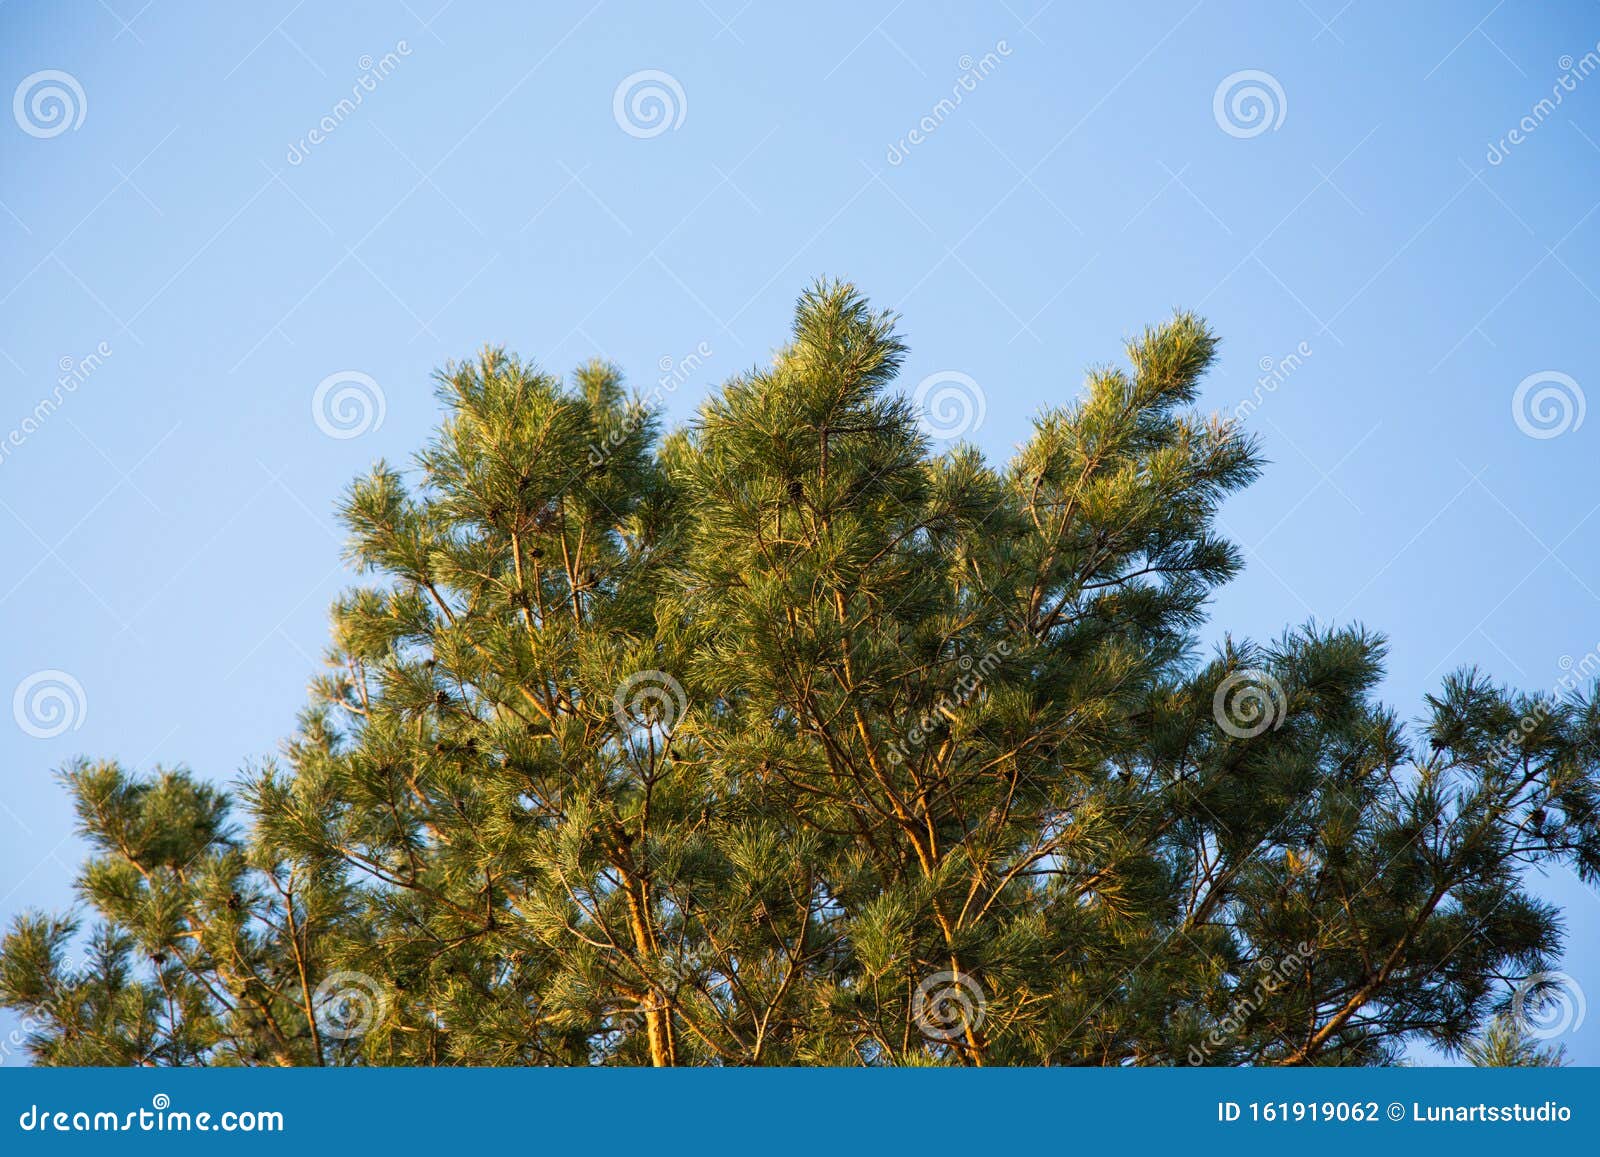 蓝天背景中的云杉树枝特写高清壁纸自然绿色云杉桌面背景墙纸库存照片